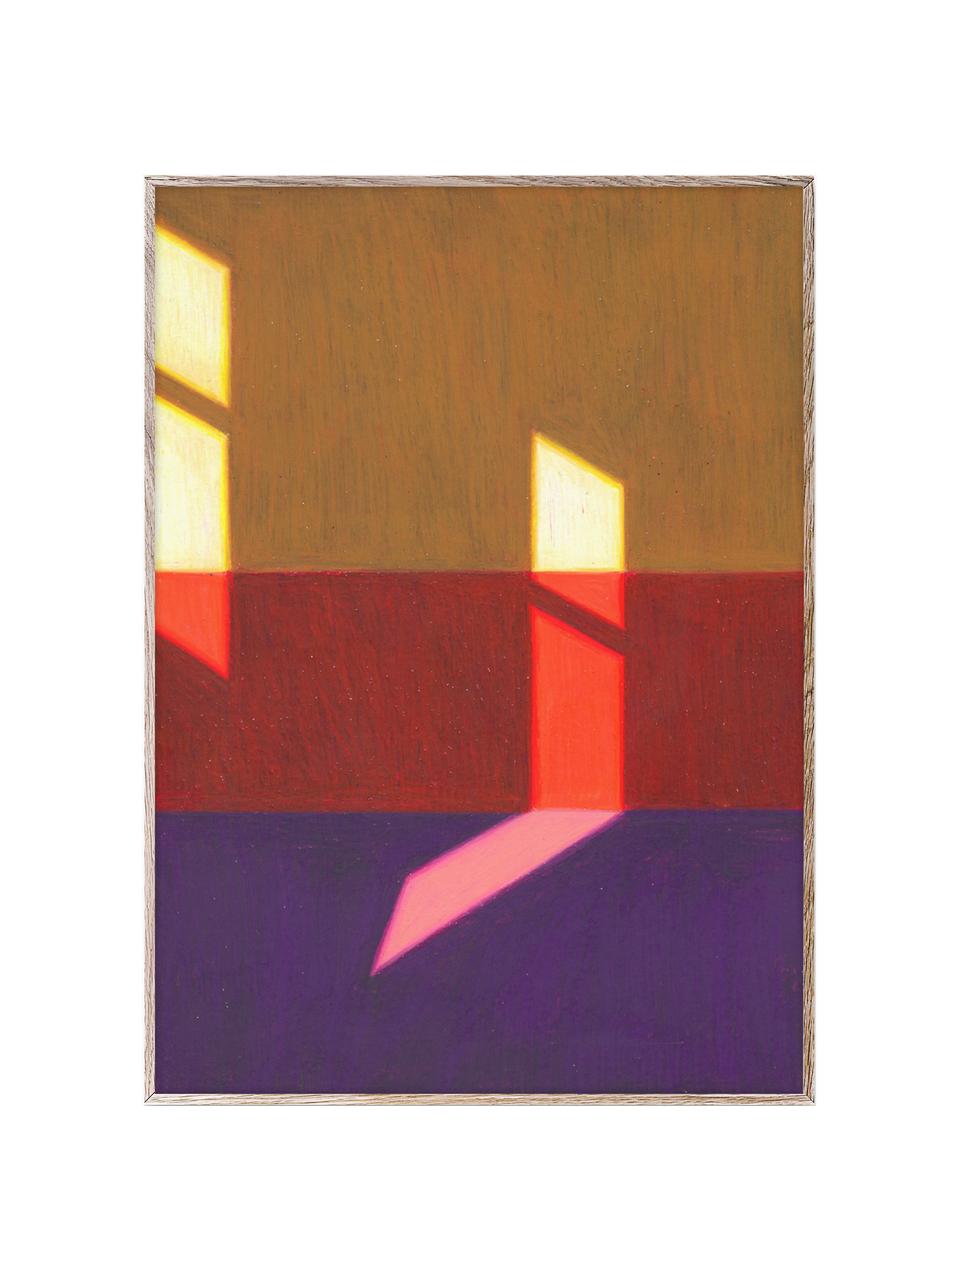 Poster Les Vacances 02, 210 g mattes Hahnemühle-Papier, Digitaldruck mit 10 UV-beständigen Farben, Lila, Rot, Gelb, B 30 x H 40 cm